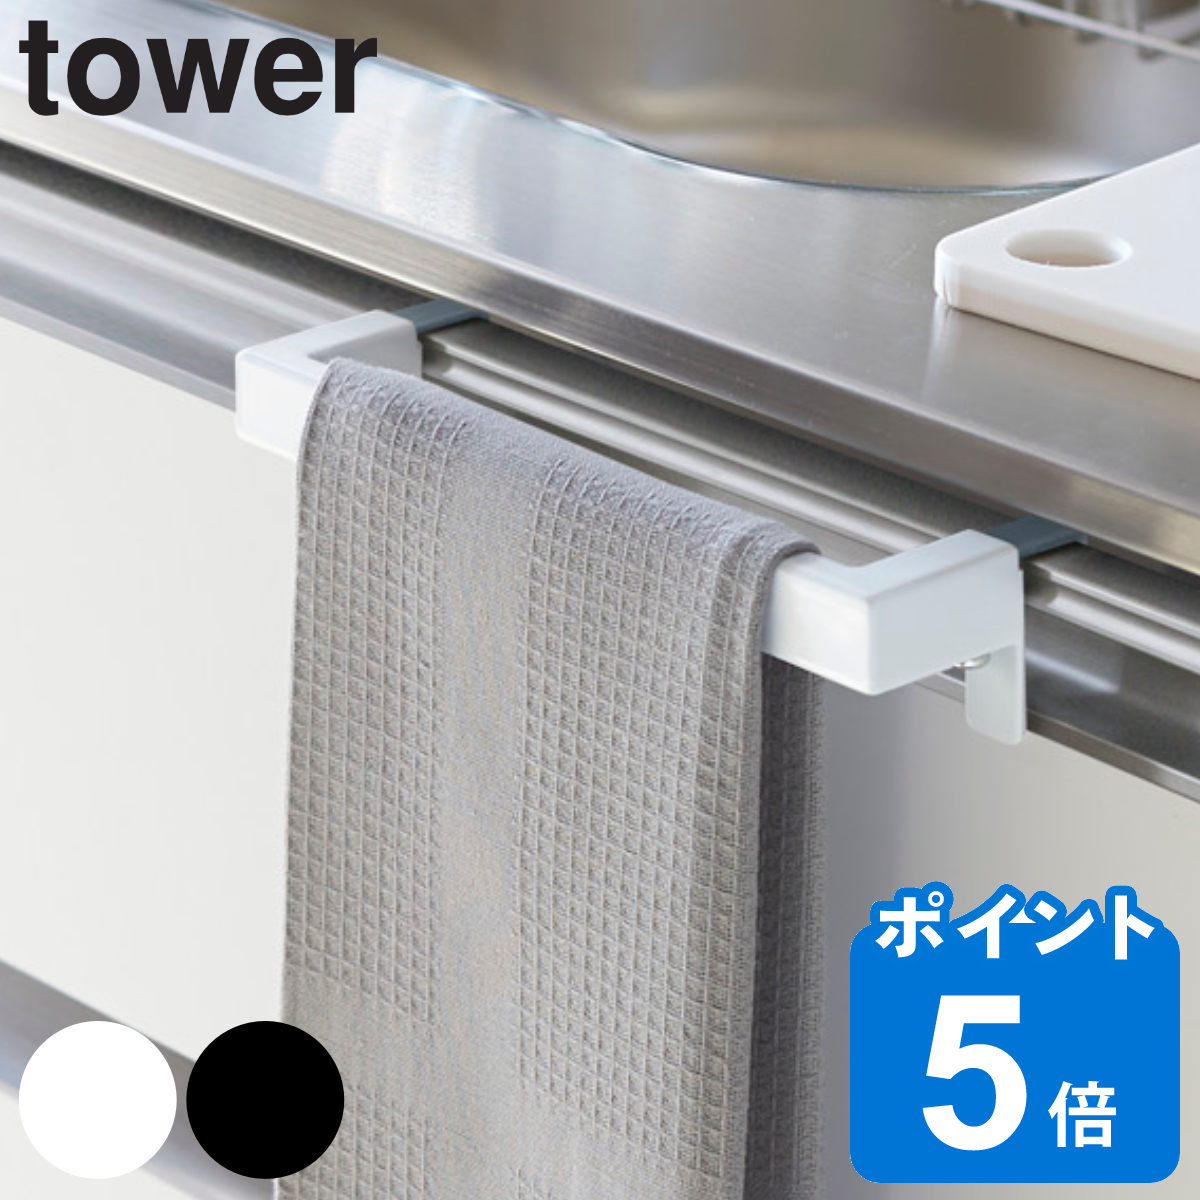 山崎実業 tower キッチンタオルハンガーバー タワー